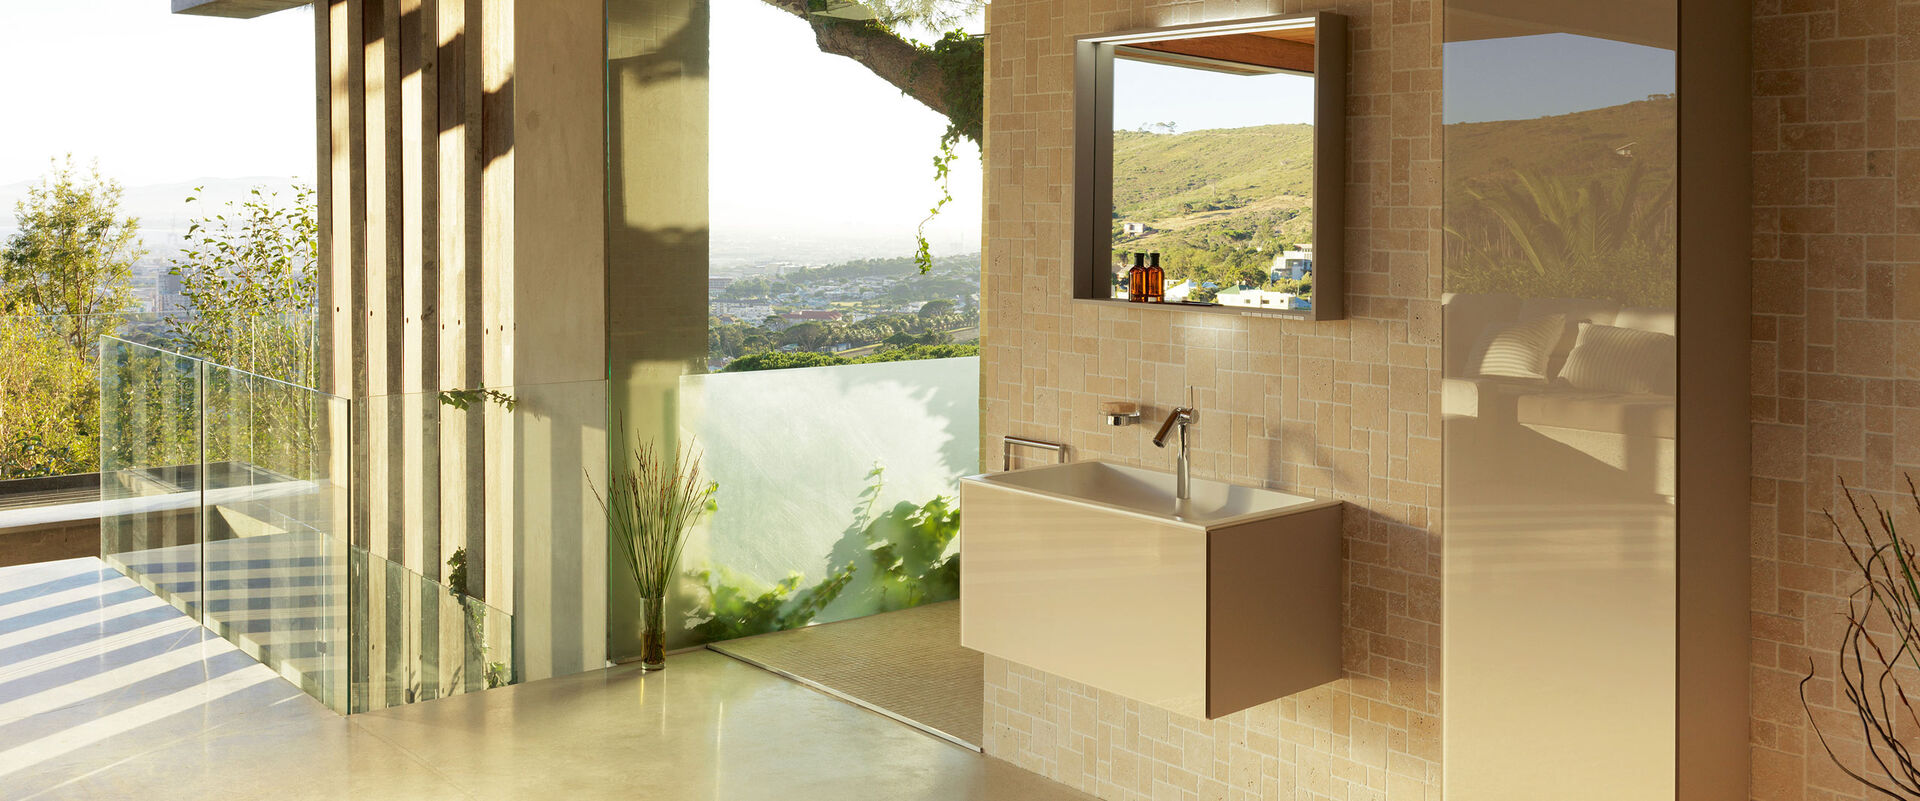 Badezimmer mit südlichem Charme in warmen Farben. Waschbecken und Badmöbel in beige sowie Badspiegel.